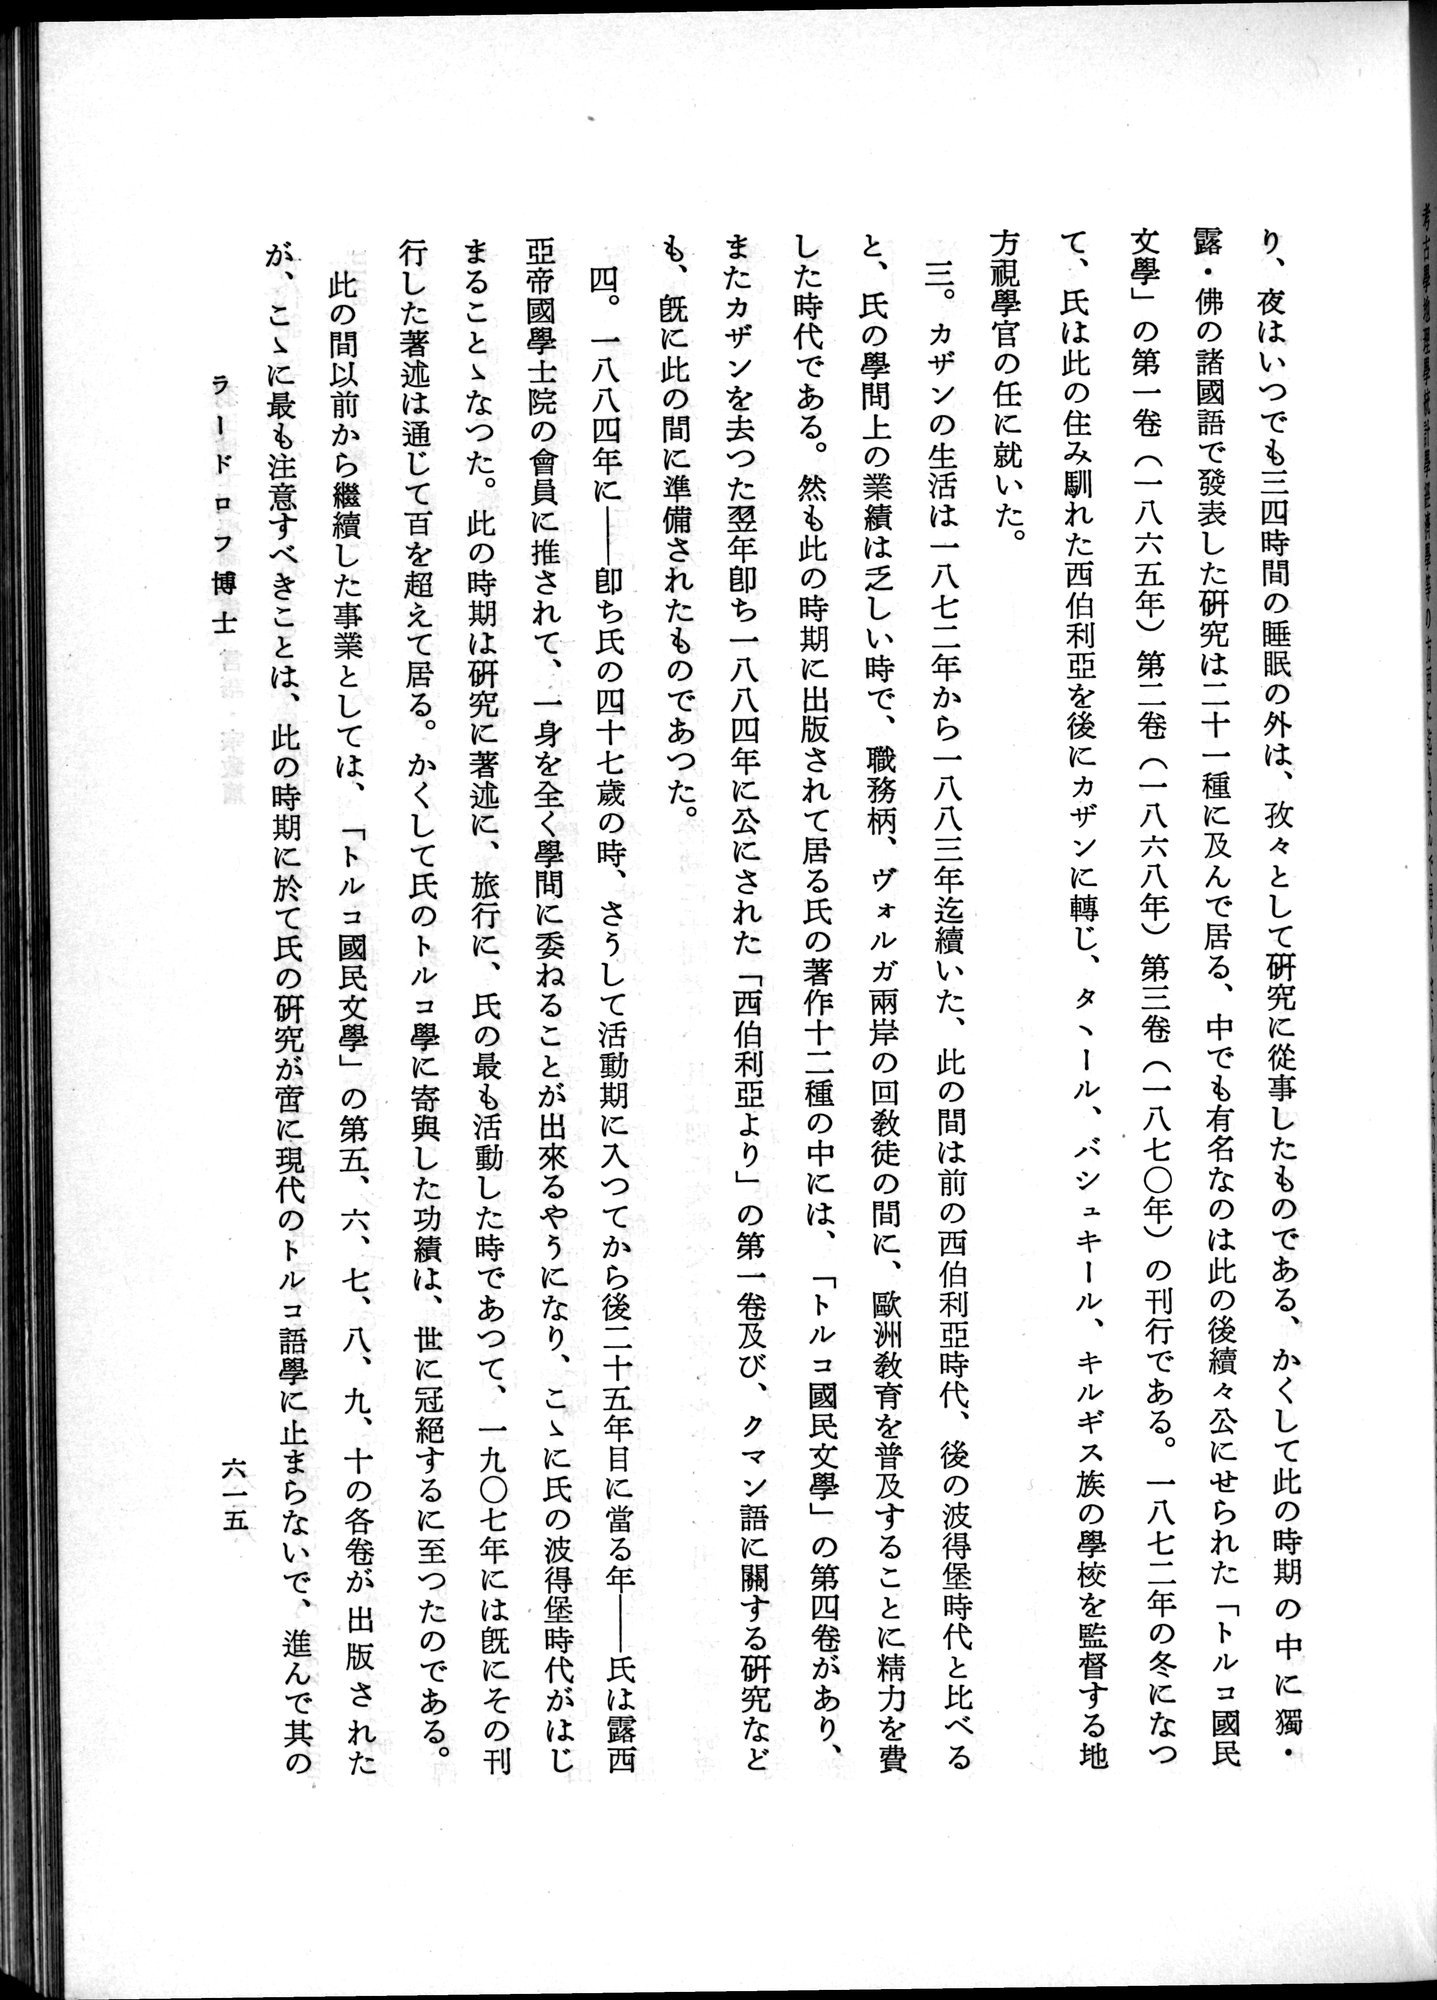 羽田博士史学論文集 : vol.2 / Page 679 (Grayscale High Resolution Image)